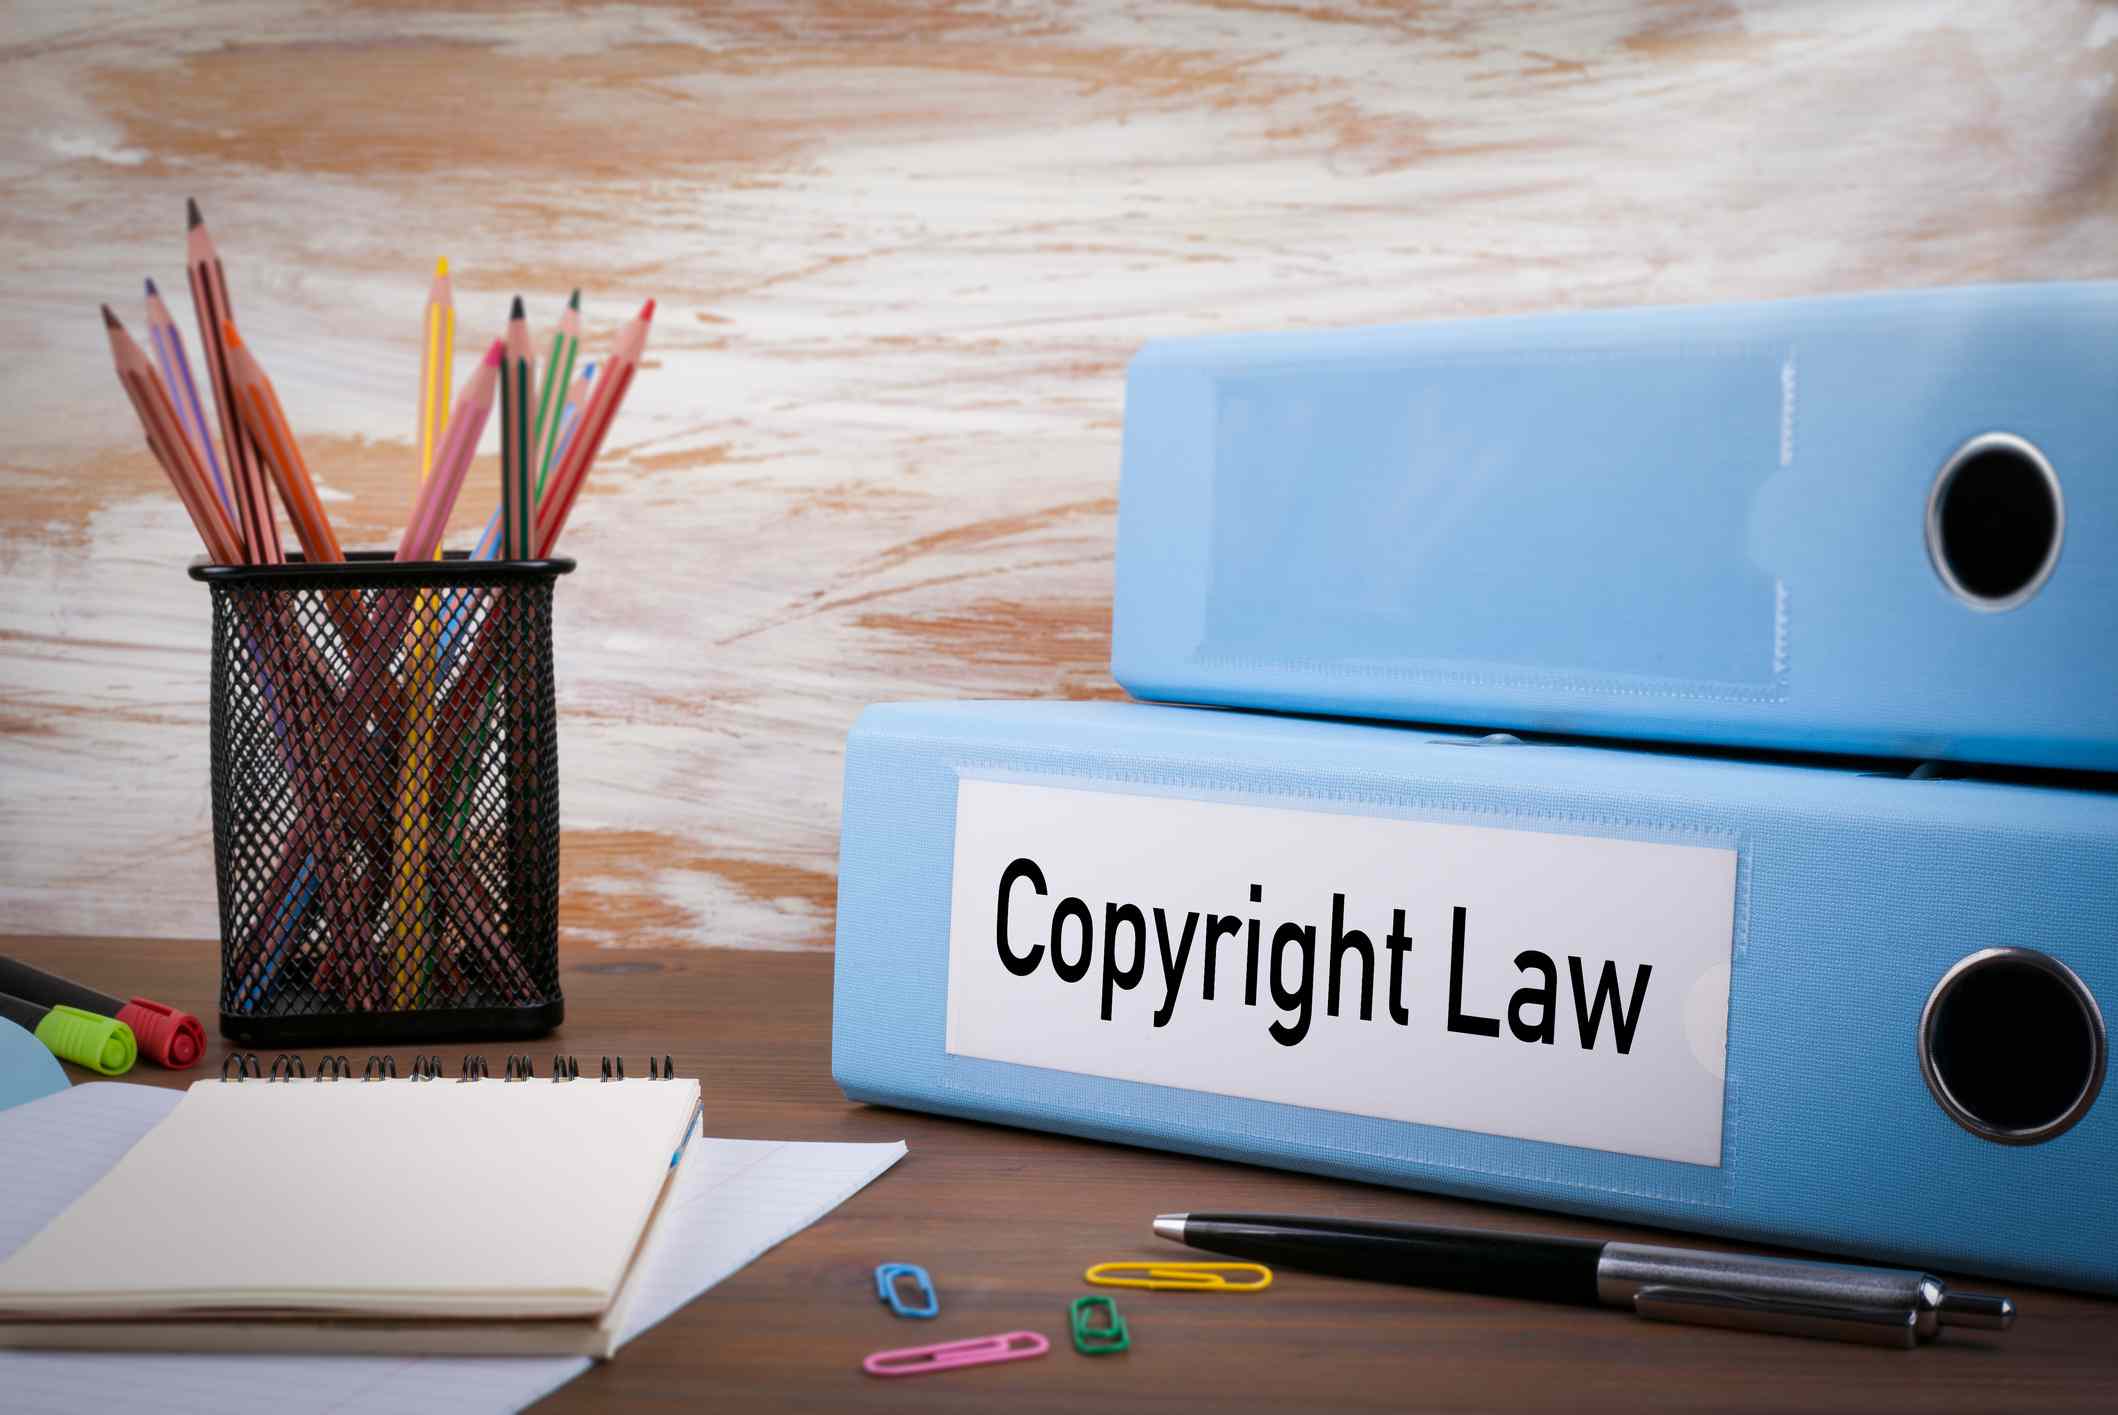 Een map met het label "Copyright Law" zittend op een bureau met blocnotes, paperclips en schrijfinstrumenten.